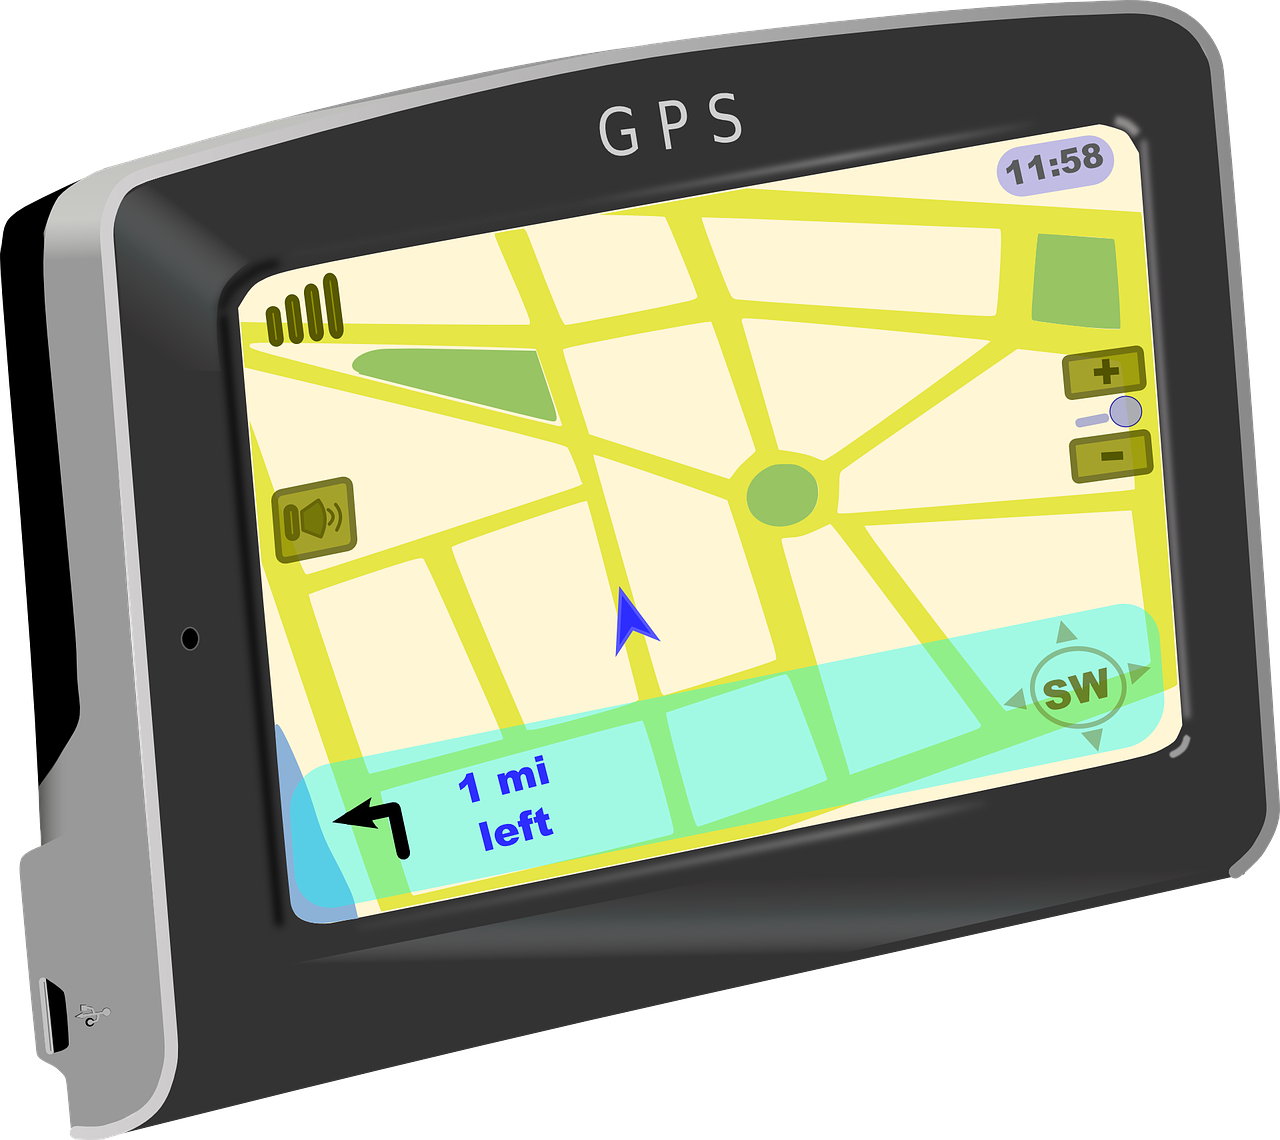 GPSnin Calisma Mantigi Nedir 1